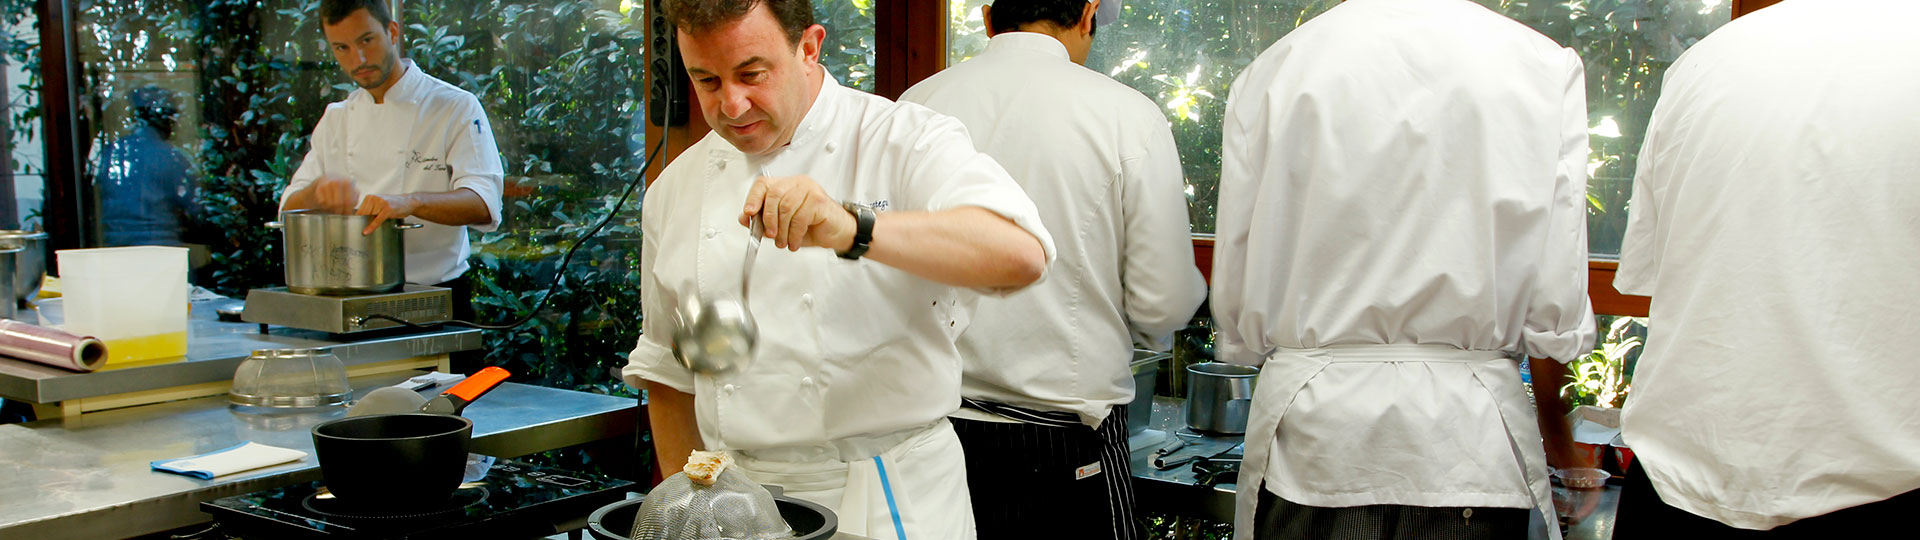 O chef espanhol Martín Berasategui cozinhando